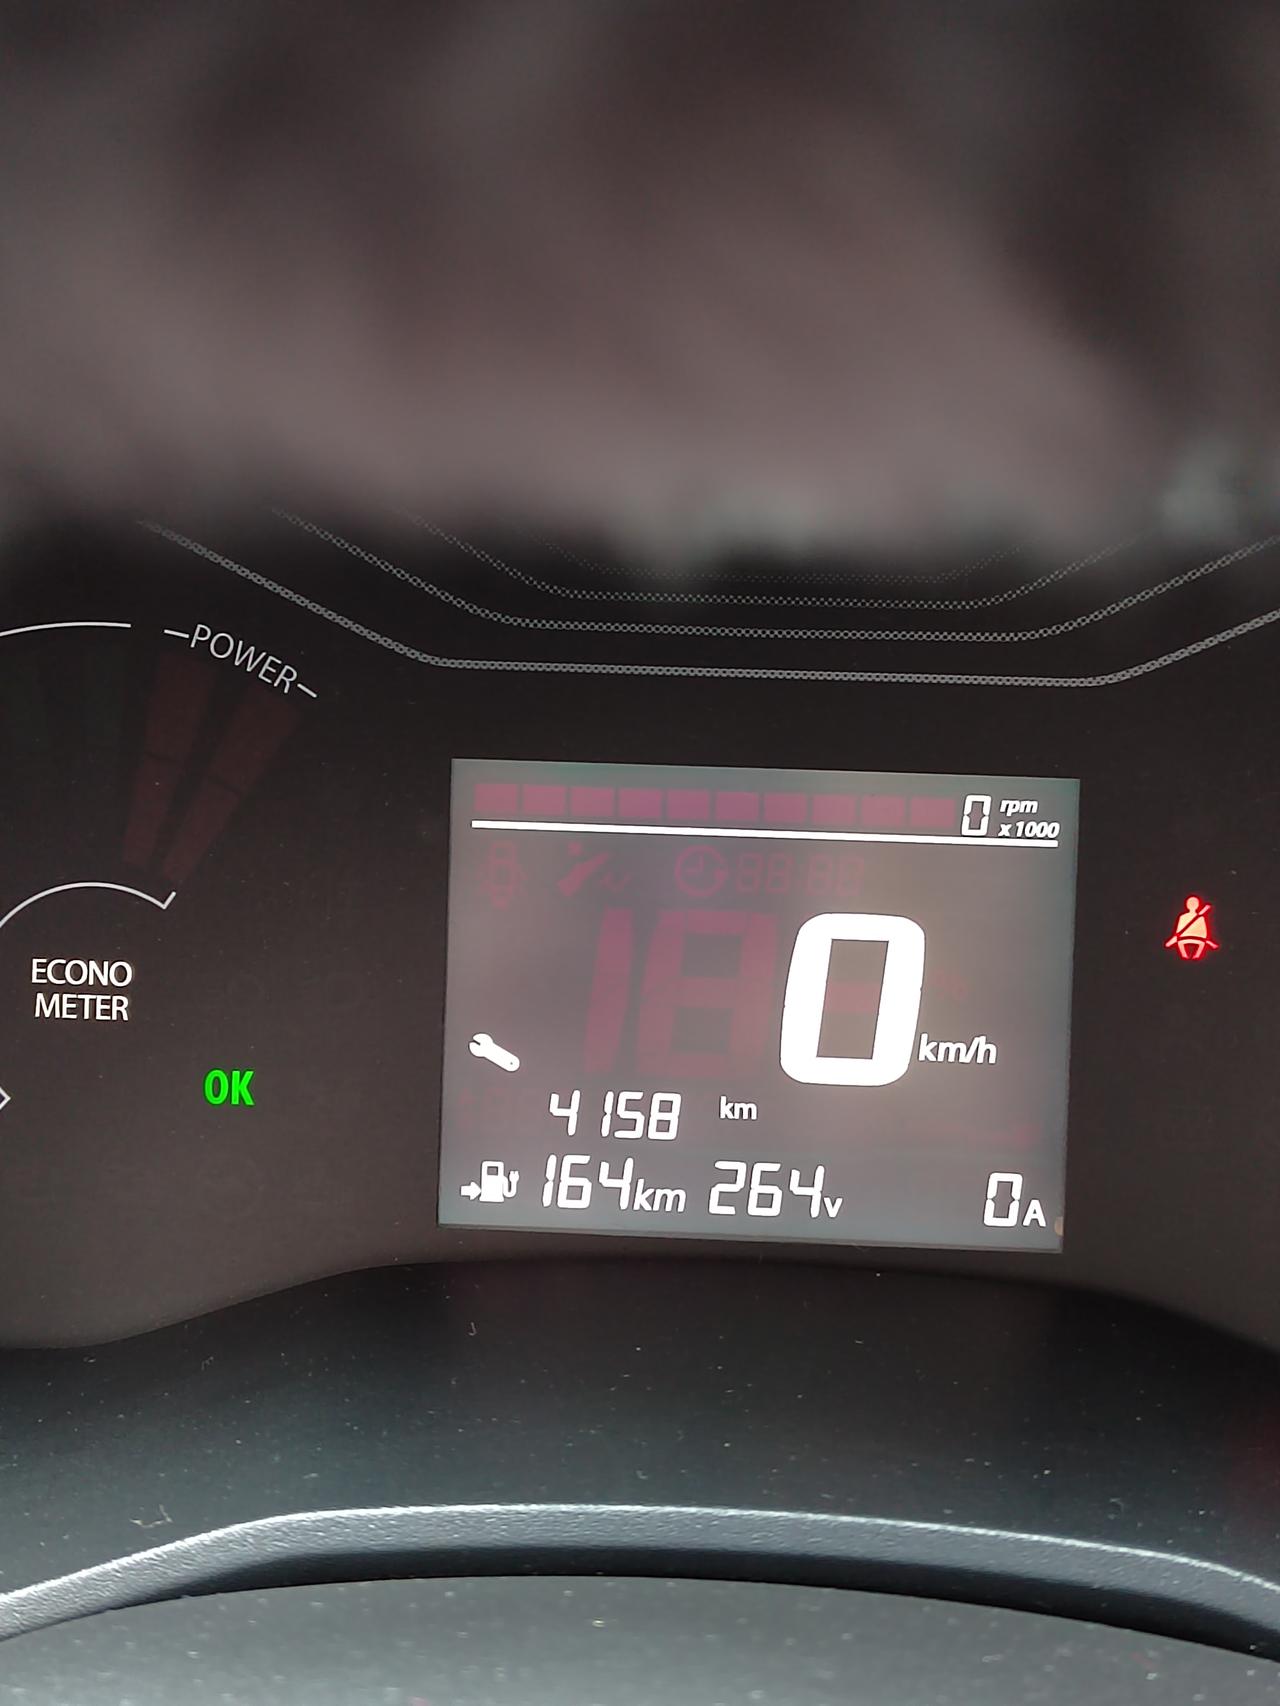 东风EV新能源EX1 车友们我的车仪表盘有个扳手指示是什么意思？好像开起来也正常，没有什么不对劲儿的。